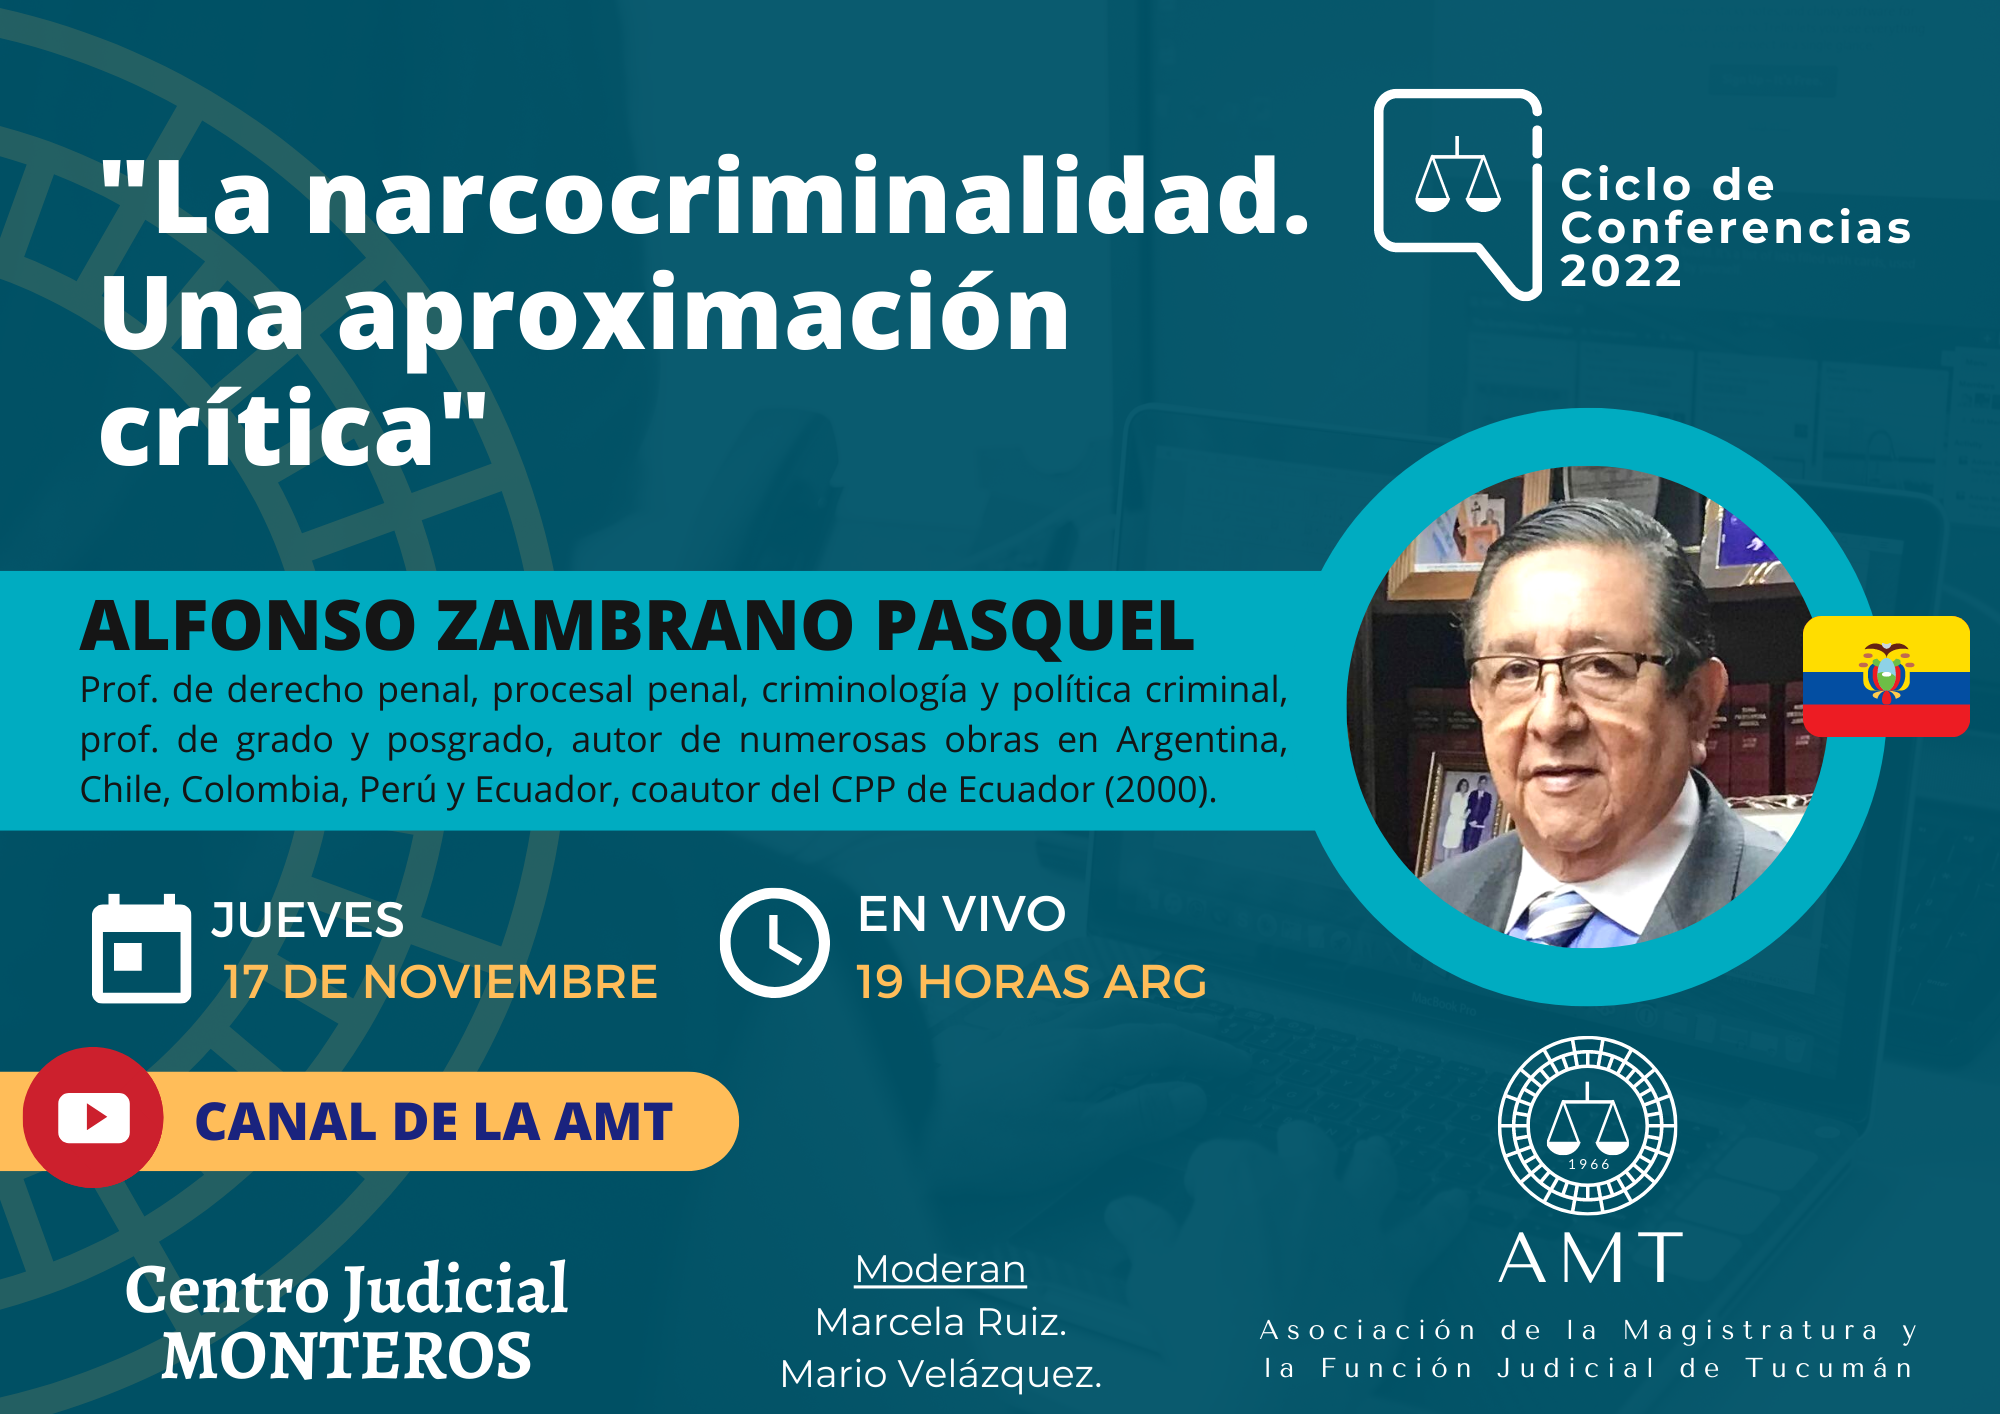 Vuelva a ver la conferencia de Alfonso Zambrano Pasquel «La narcocriminalidad. Una aproximación crítica»  